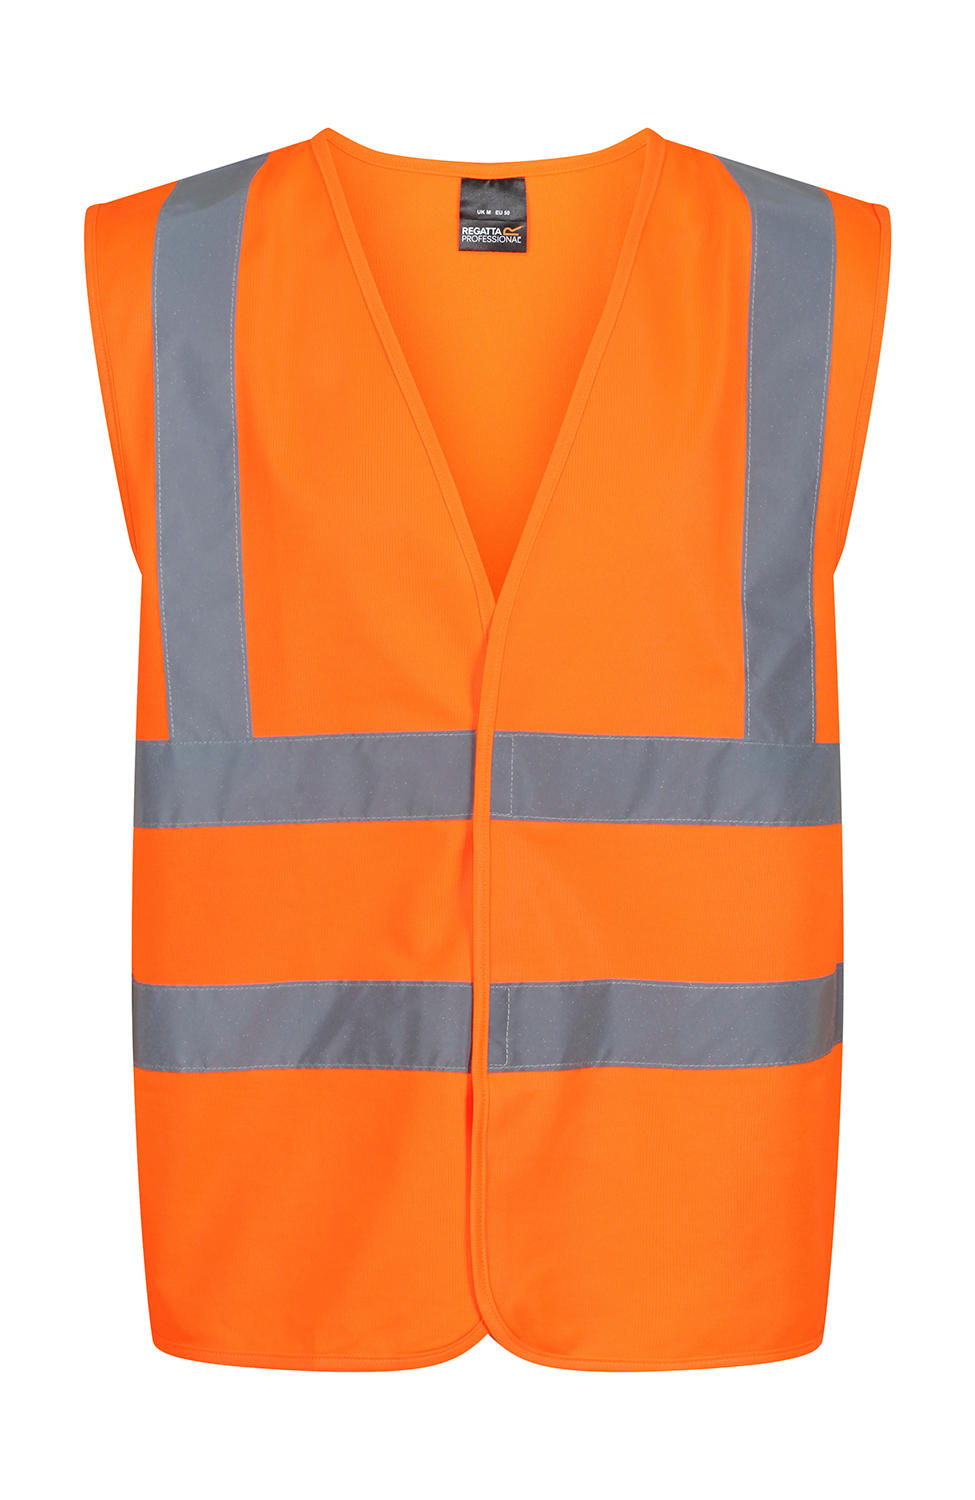  Pro Hi Vis Vest in Farbe Orange